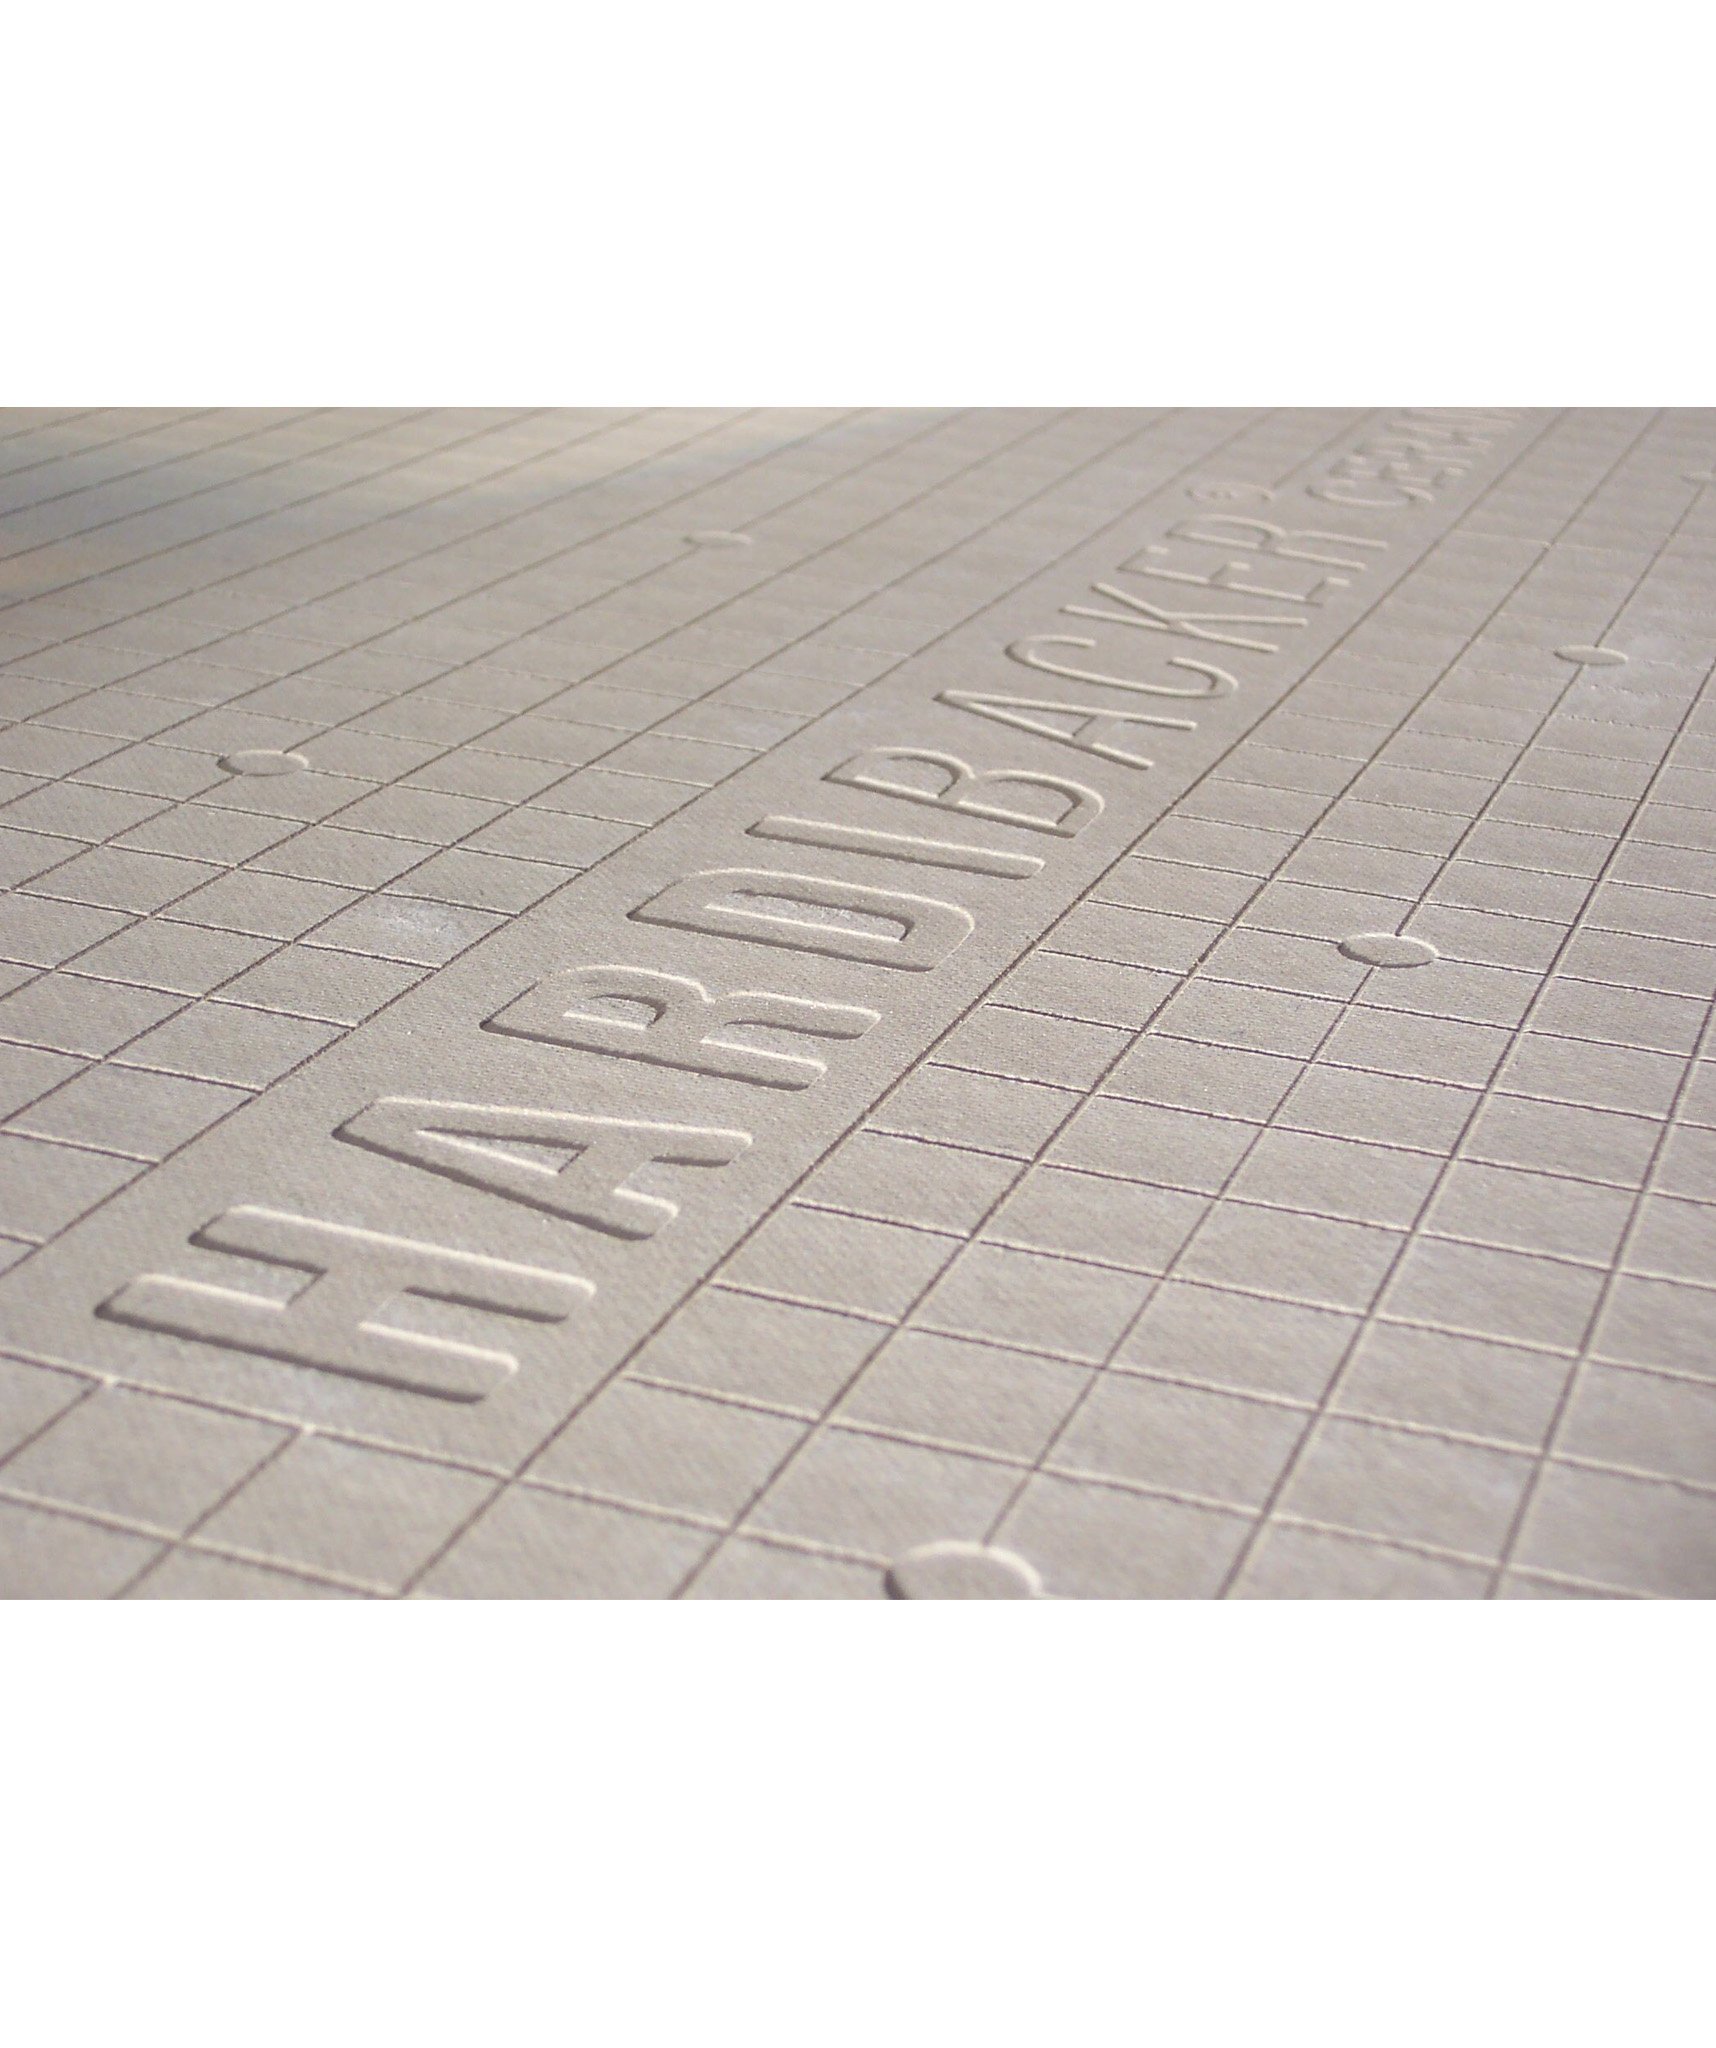 Hardiebacker Backerboard 6mm Topps Tiles, Tile Backing Board